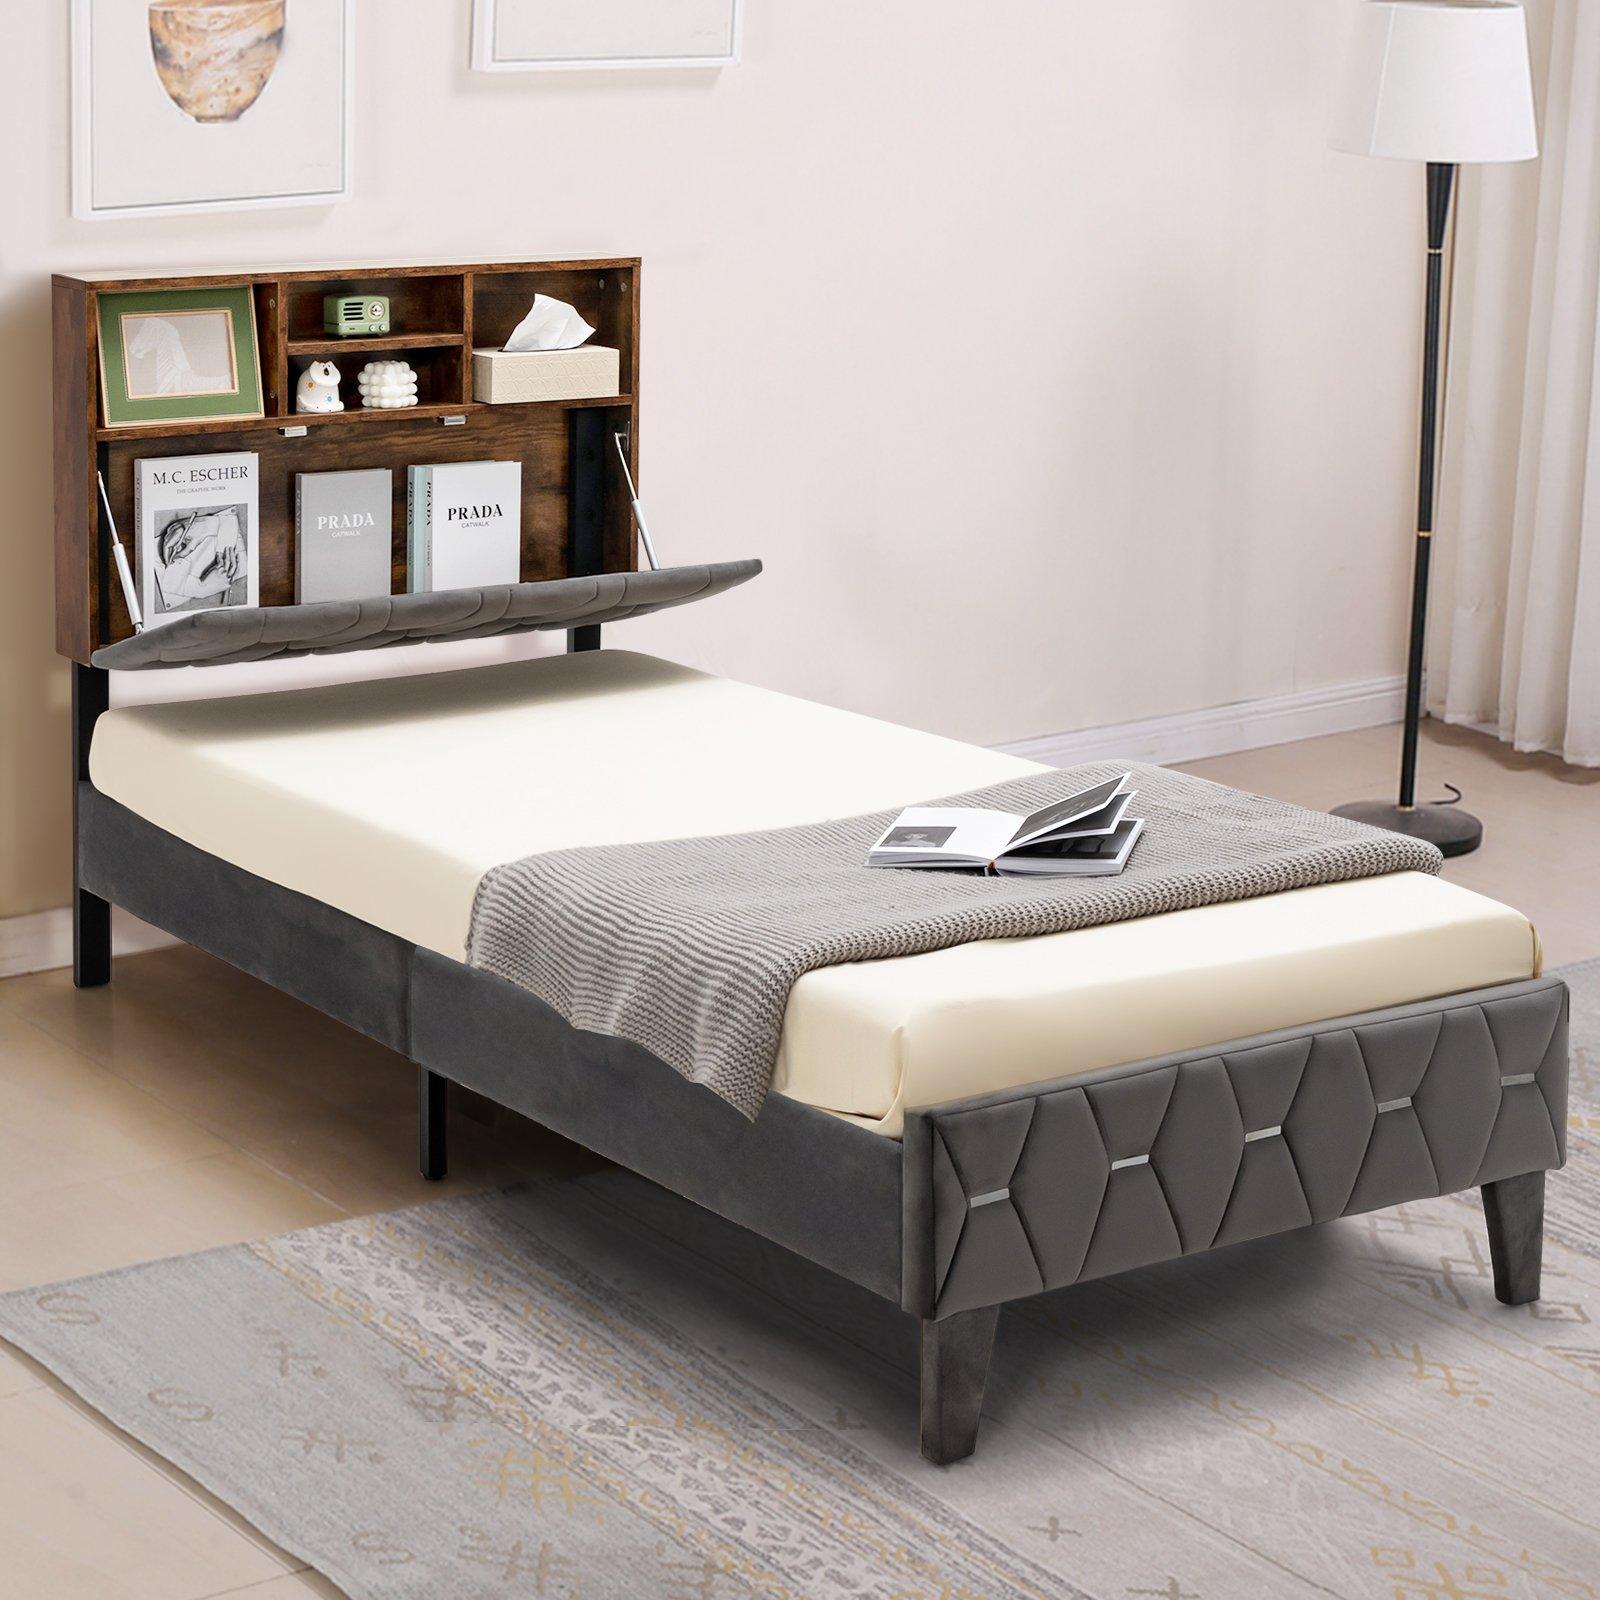 Single Size Bed Frame Upholstered Platform Bed Slat Support W/ Storage Headboard